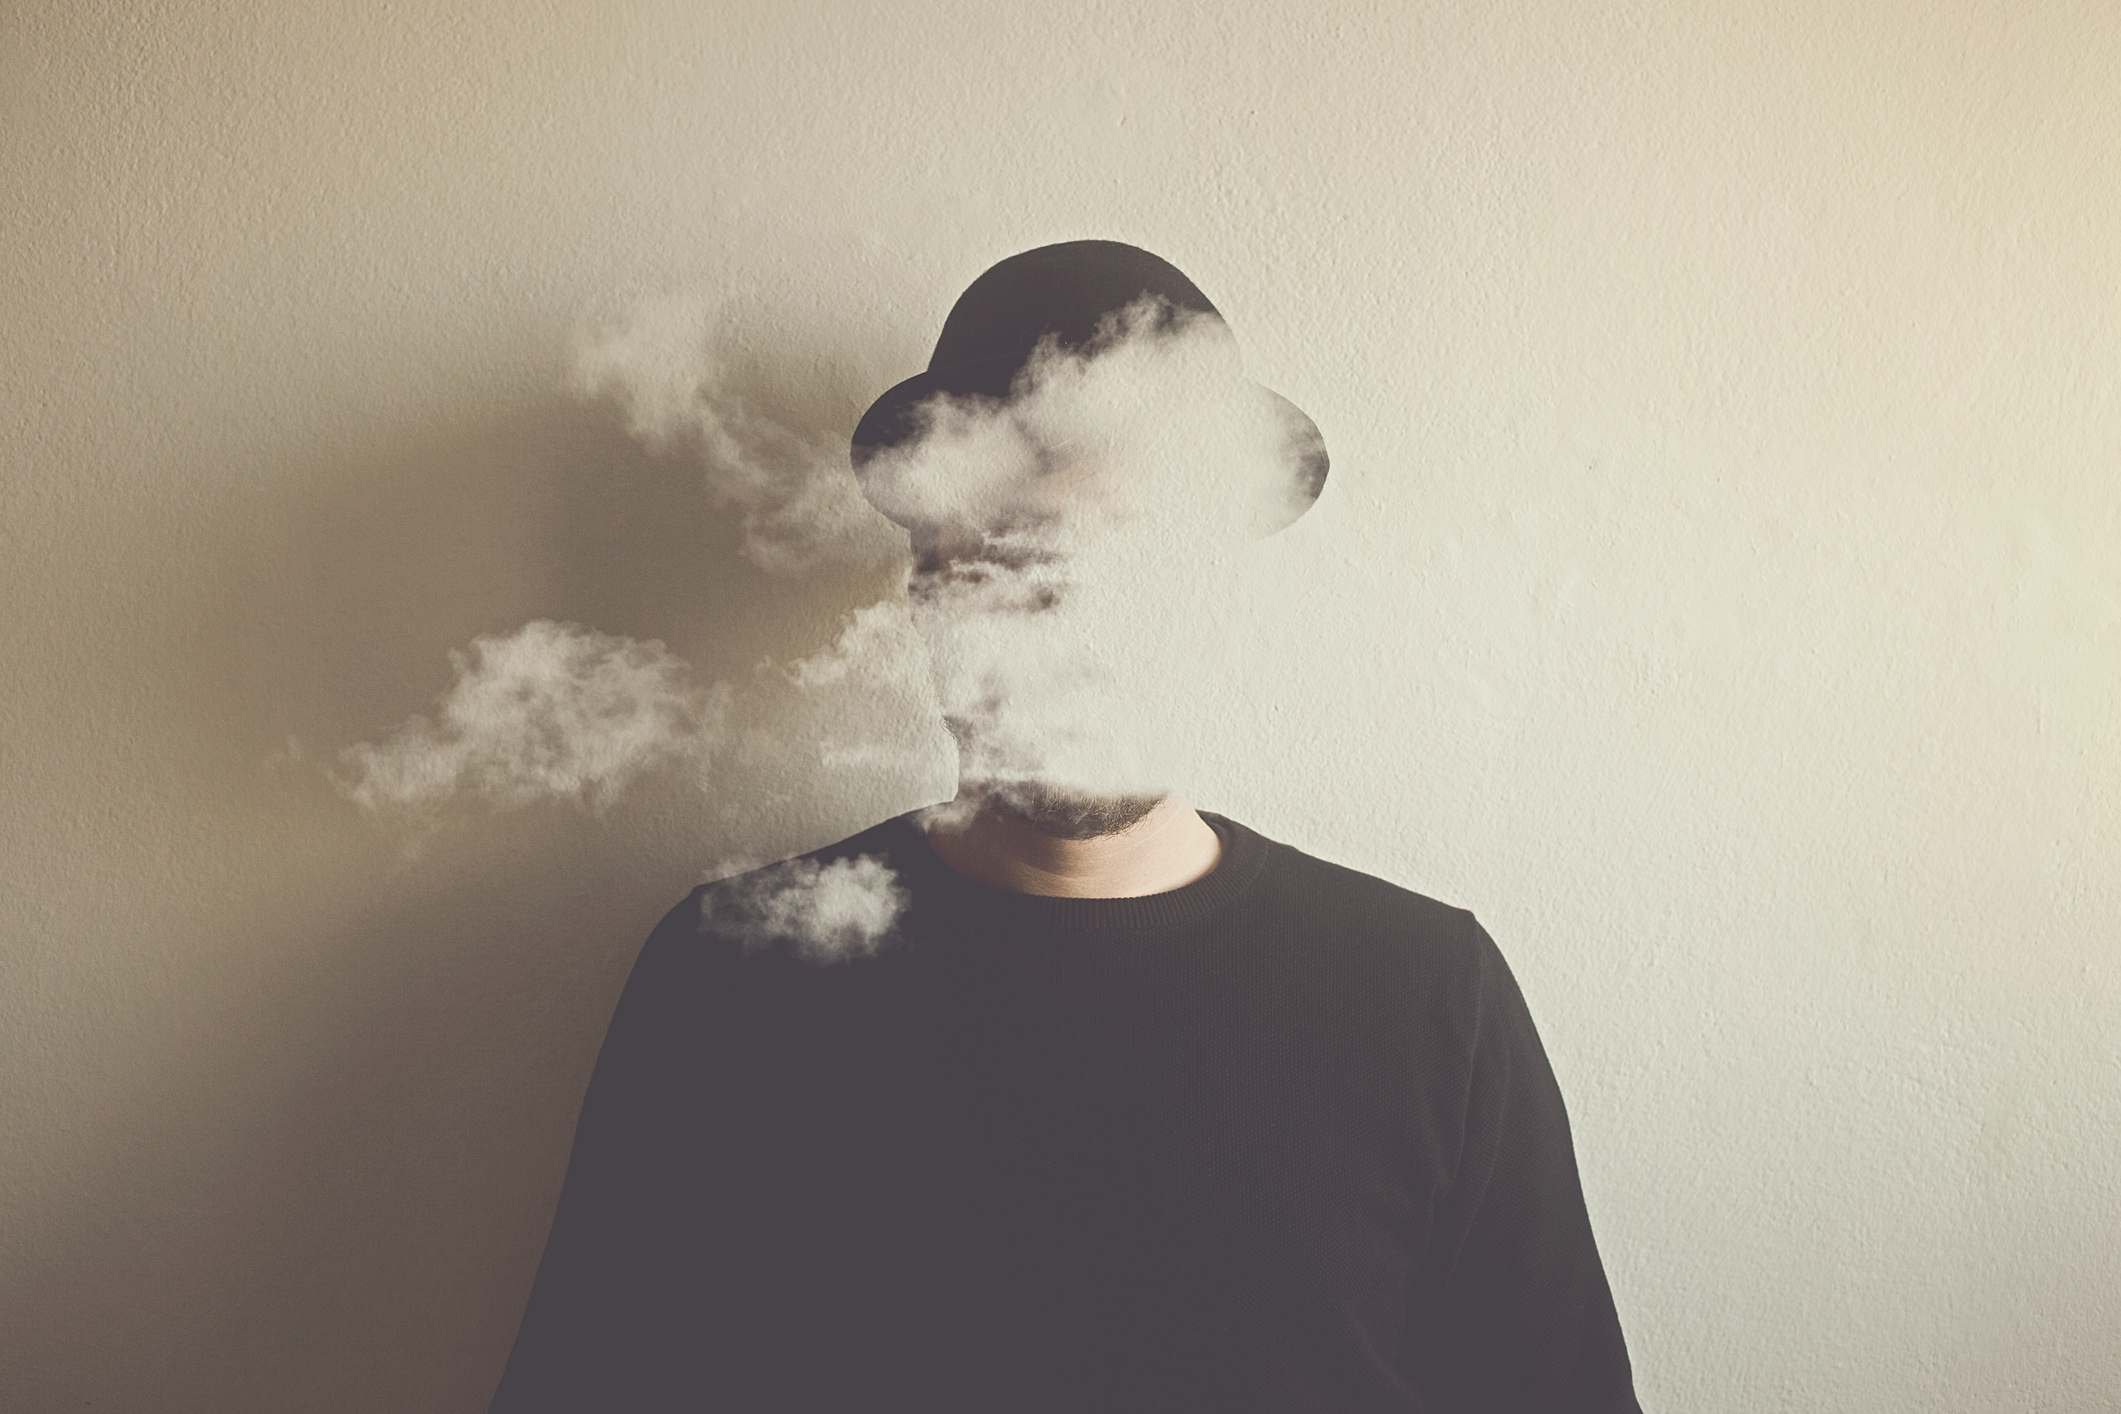 Montagem fotográfica mostra homem com o rosto coberto de fumaça branca - - nevoeiro cerebral - Metrópoles